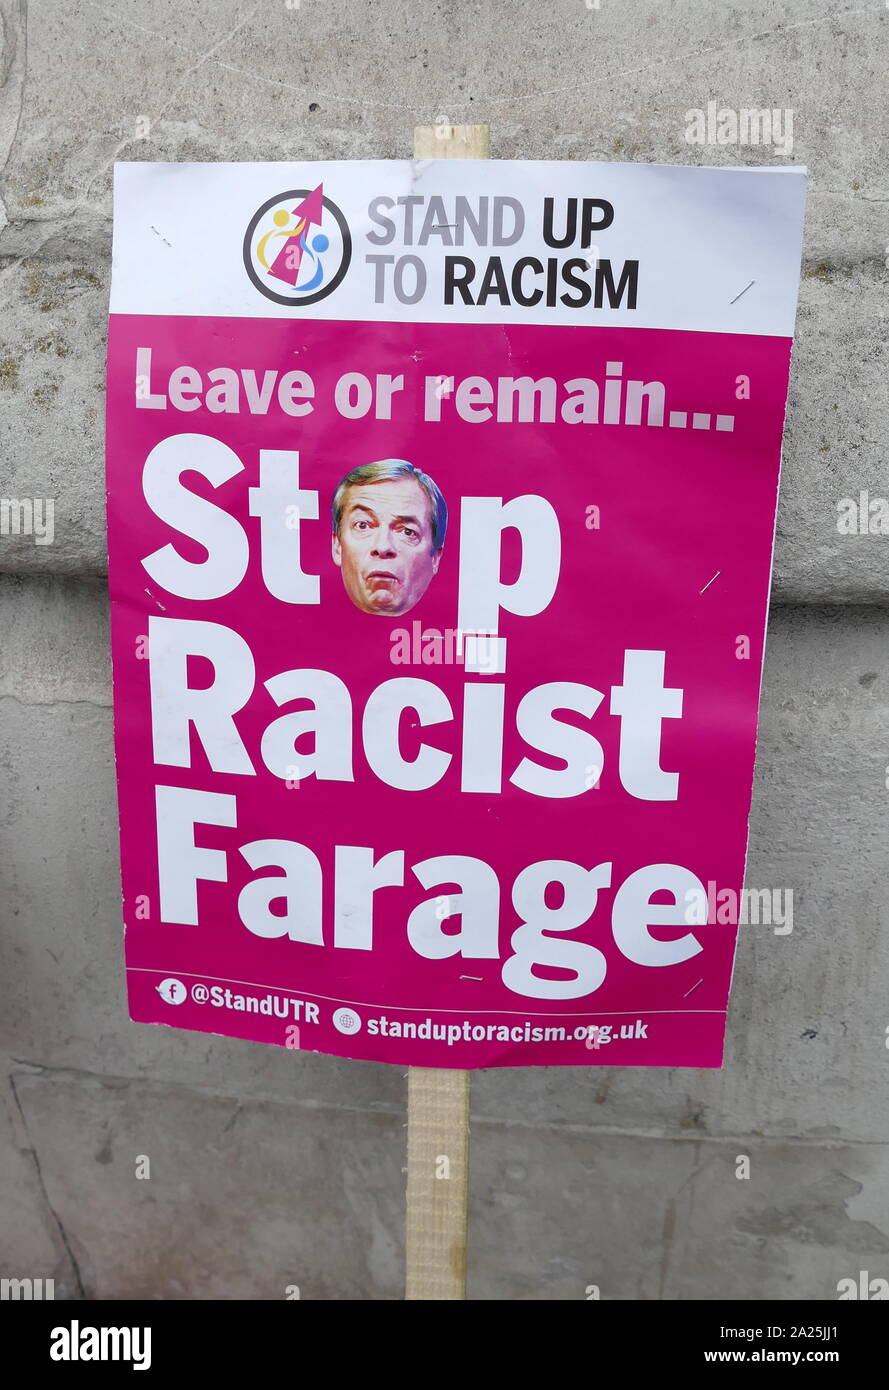 Manifestazioni a Whitehall e Trafalgar Square a Londra durante la visita di Stato del Presidente americano Donald Trump in Gran Bretagna; Giugno 2019 Foto Stock